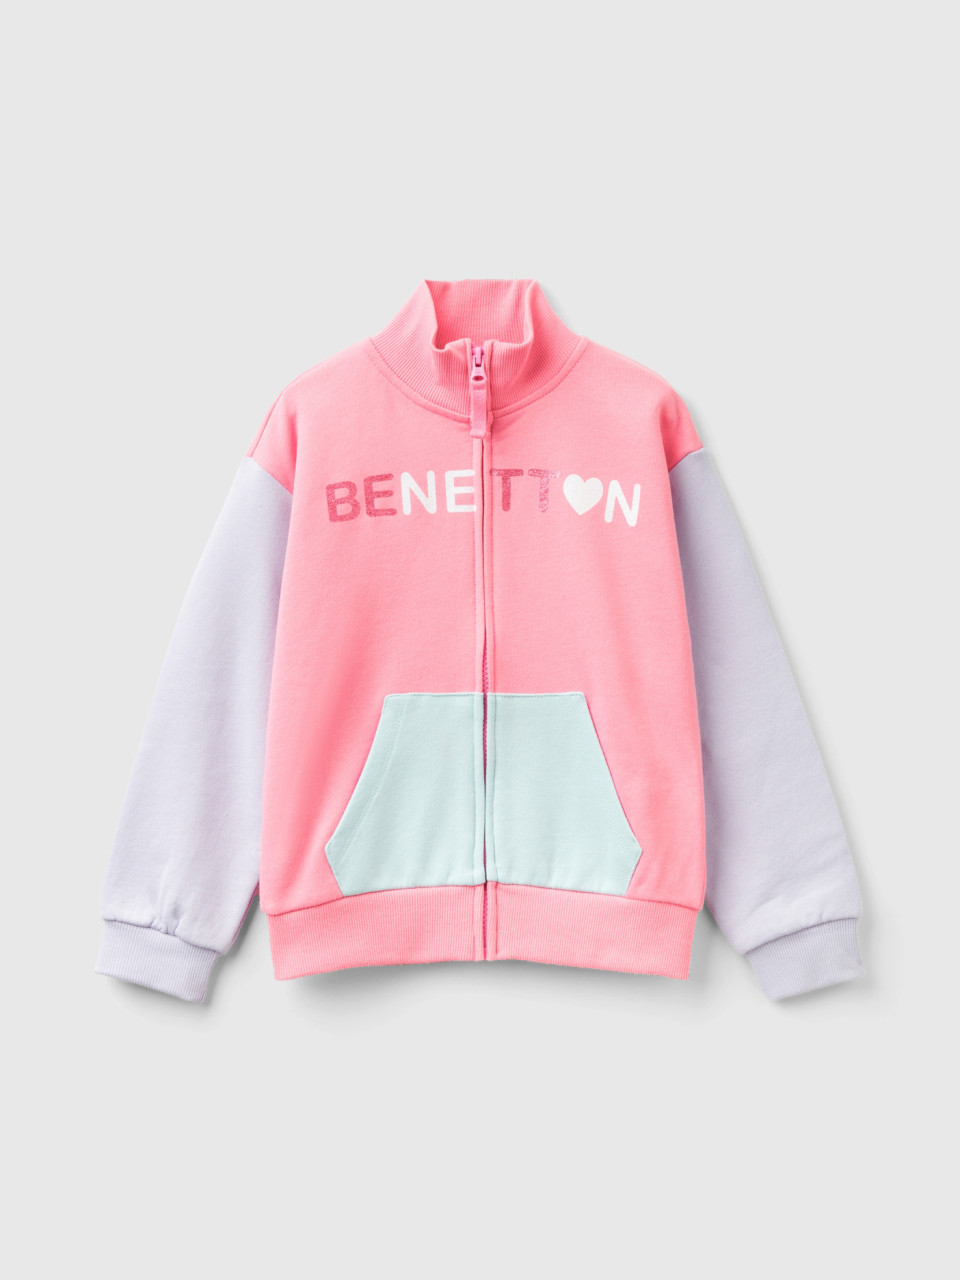 Benetton, Sweatshirt Mit Reißverschluss Und Kragen, Pink, female